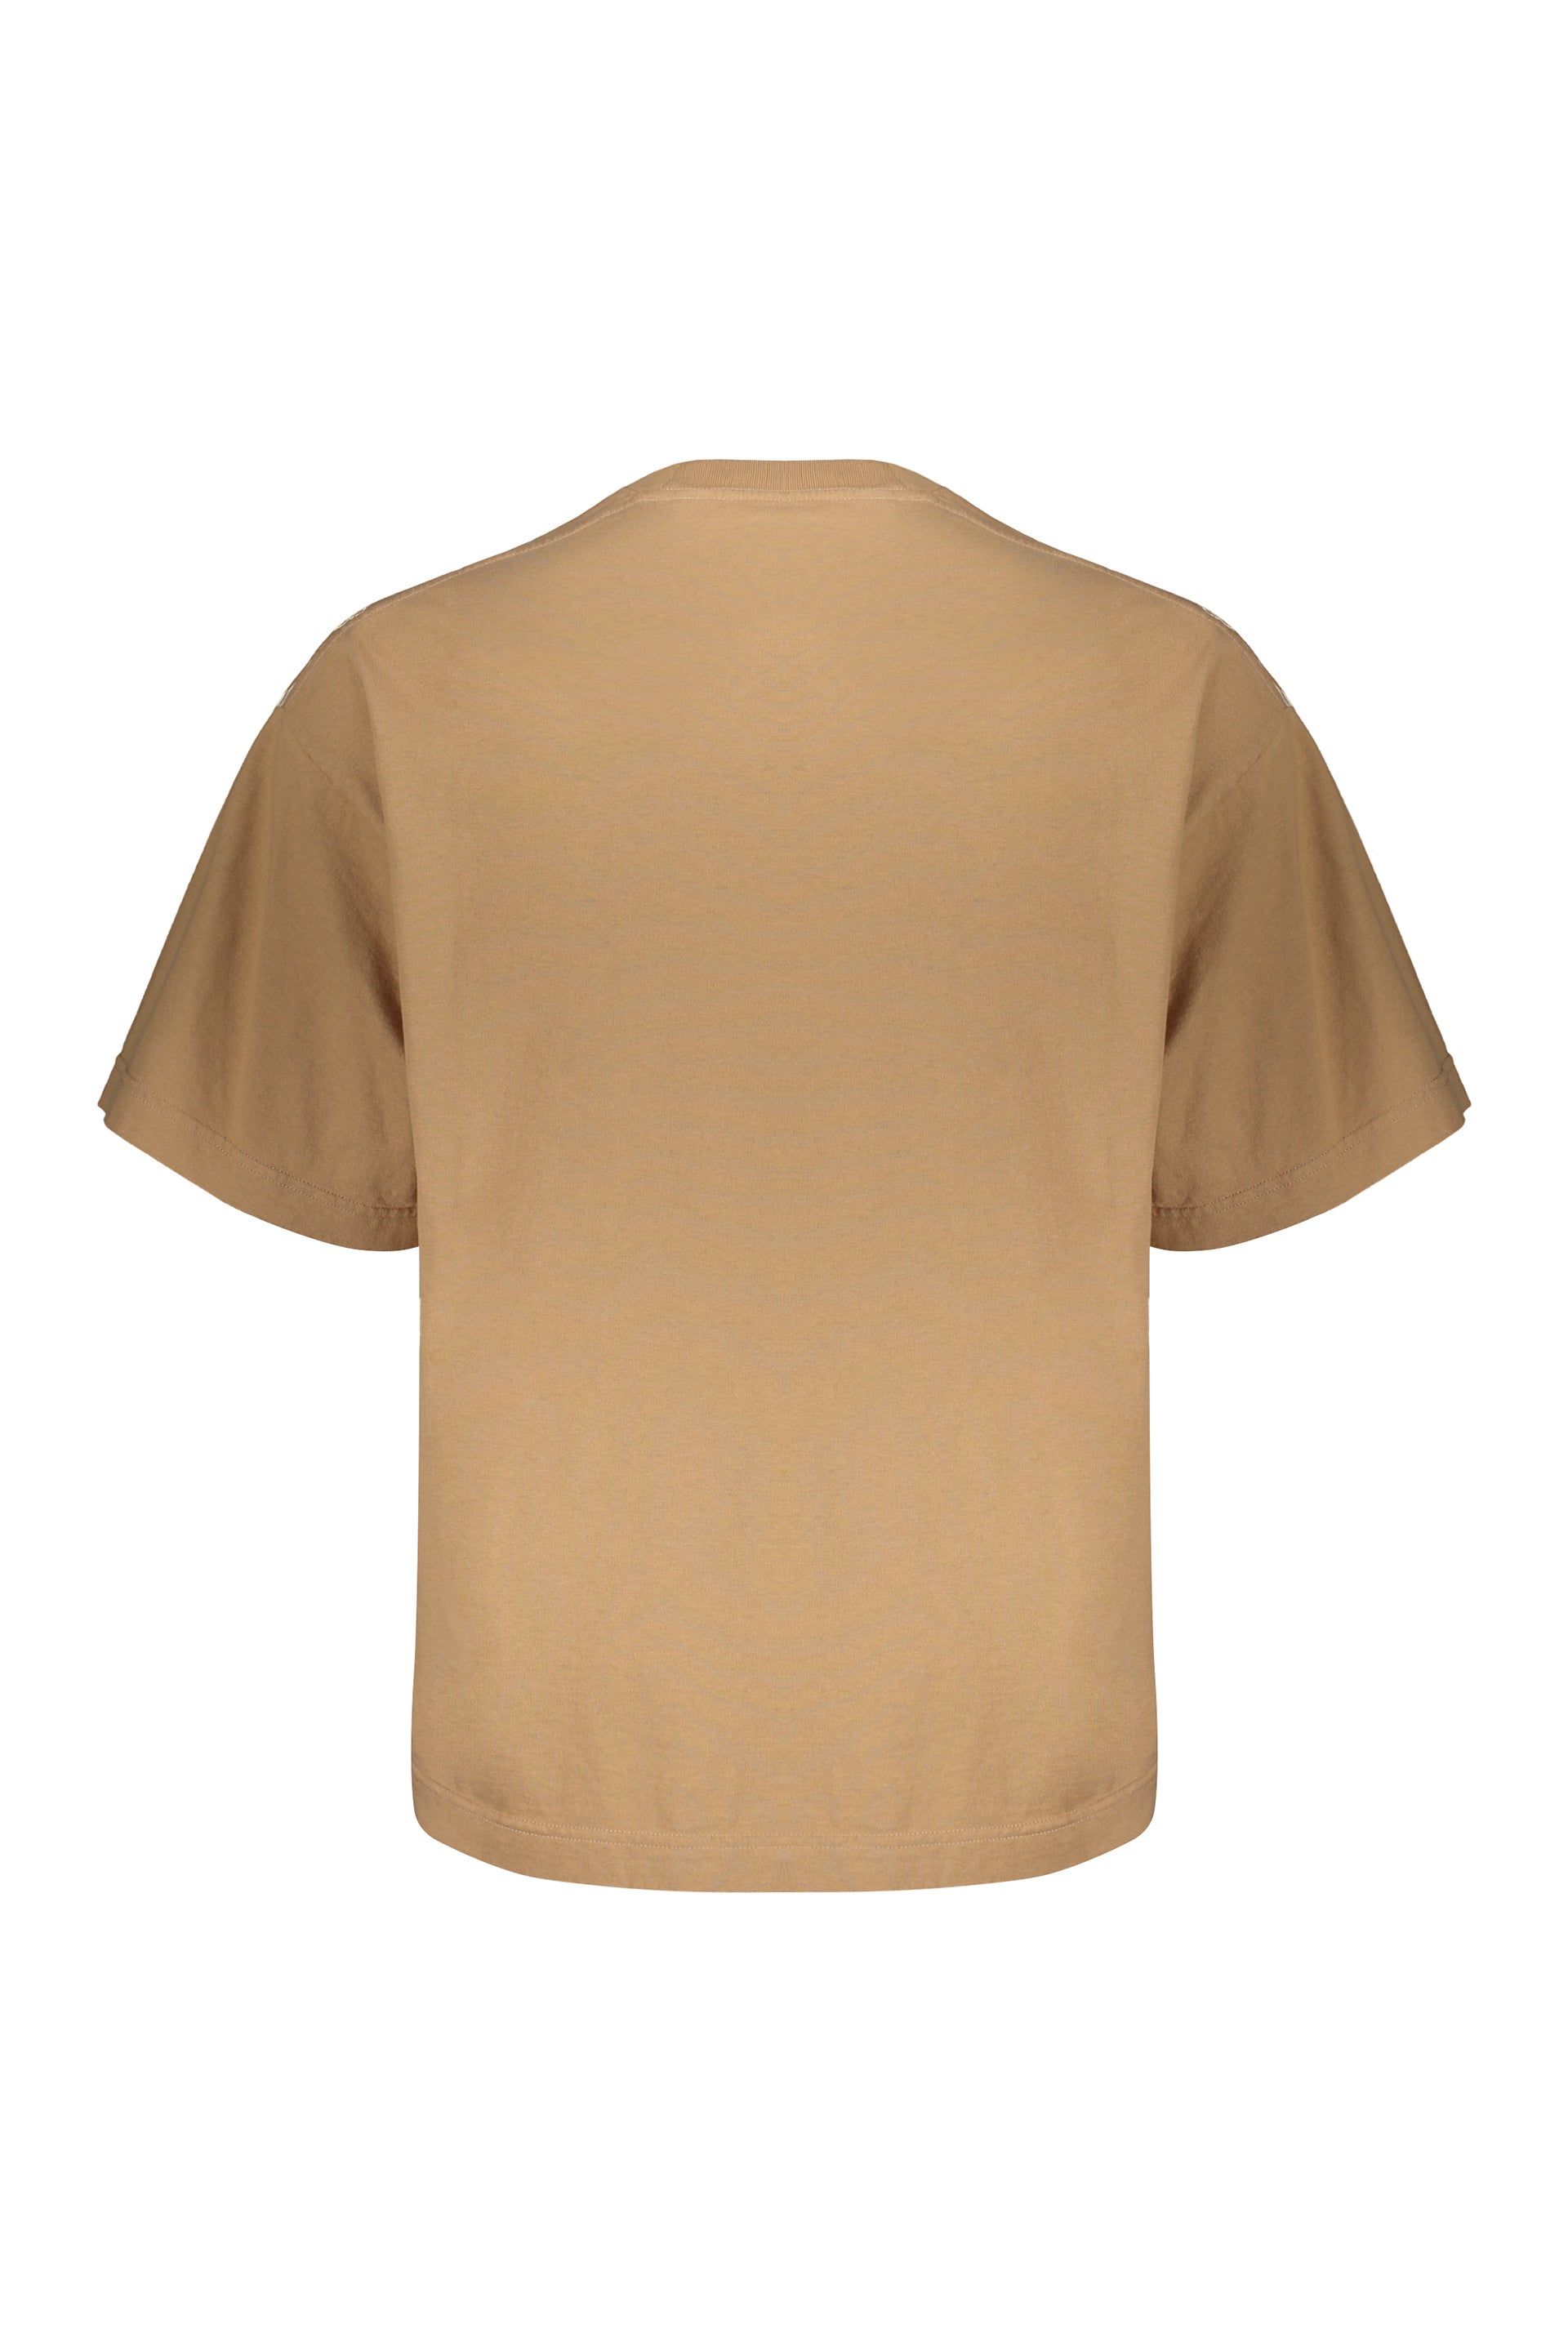 Palm-Angels-OUTLET-SALE-Cotton-T-shirt-Shirts-XS-ARCHIVE-COLLECTION-2_7c00566e-d01d-4522-9e4f-ba23d14dff7d.jpg